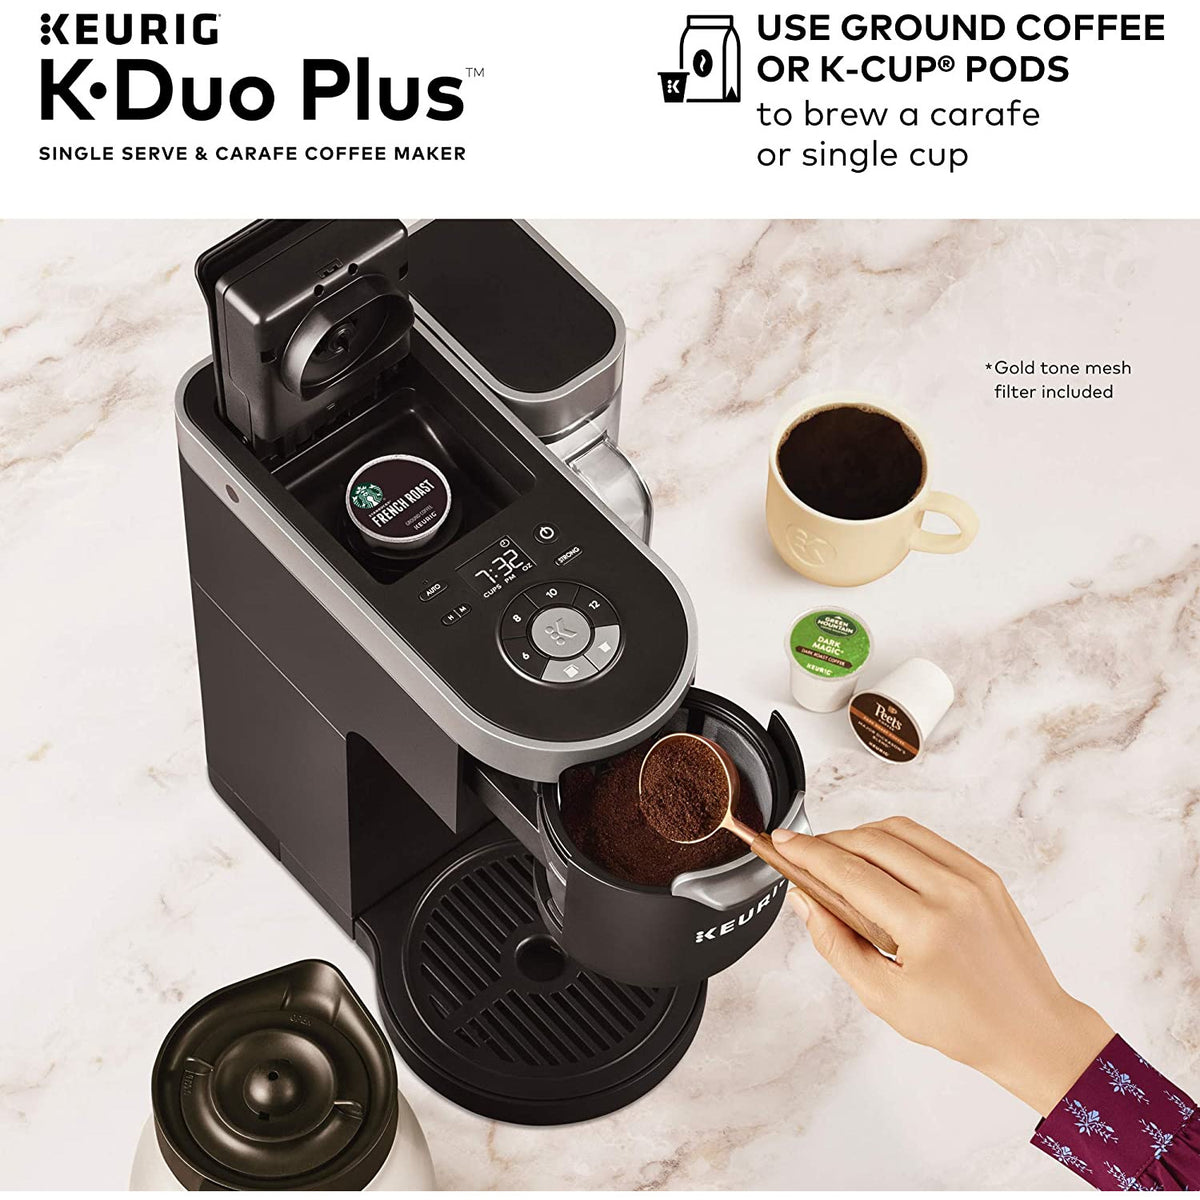 Keurig K-Duo Plus - appliances - by owner - sale - craigslist